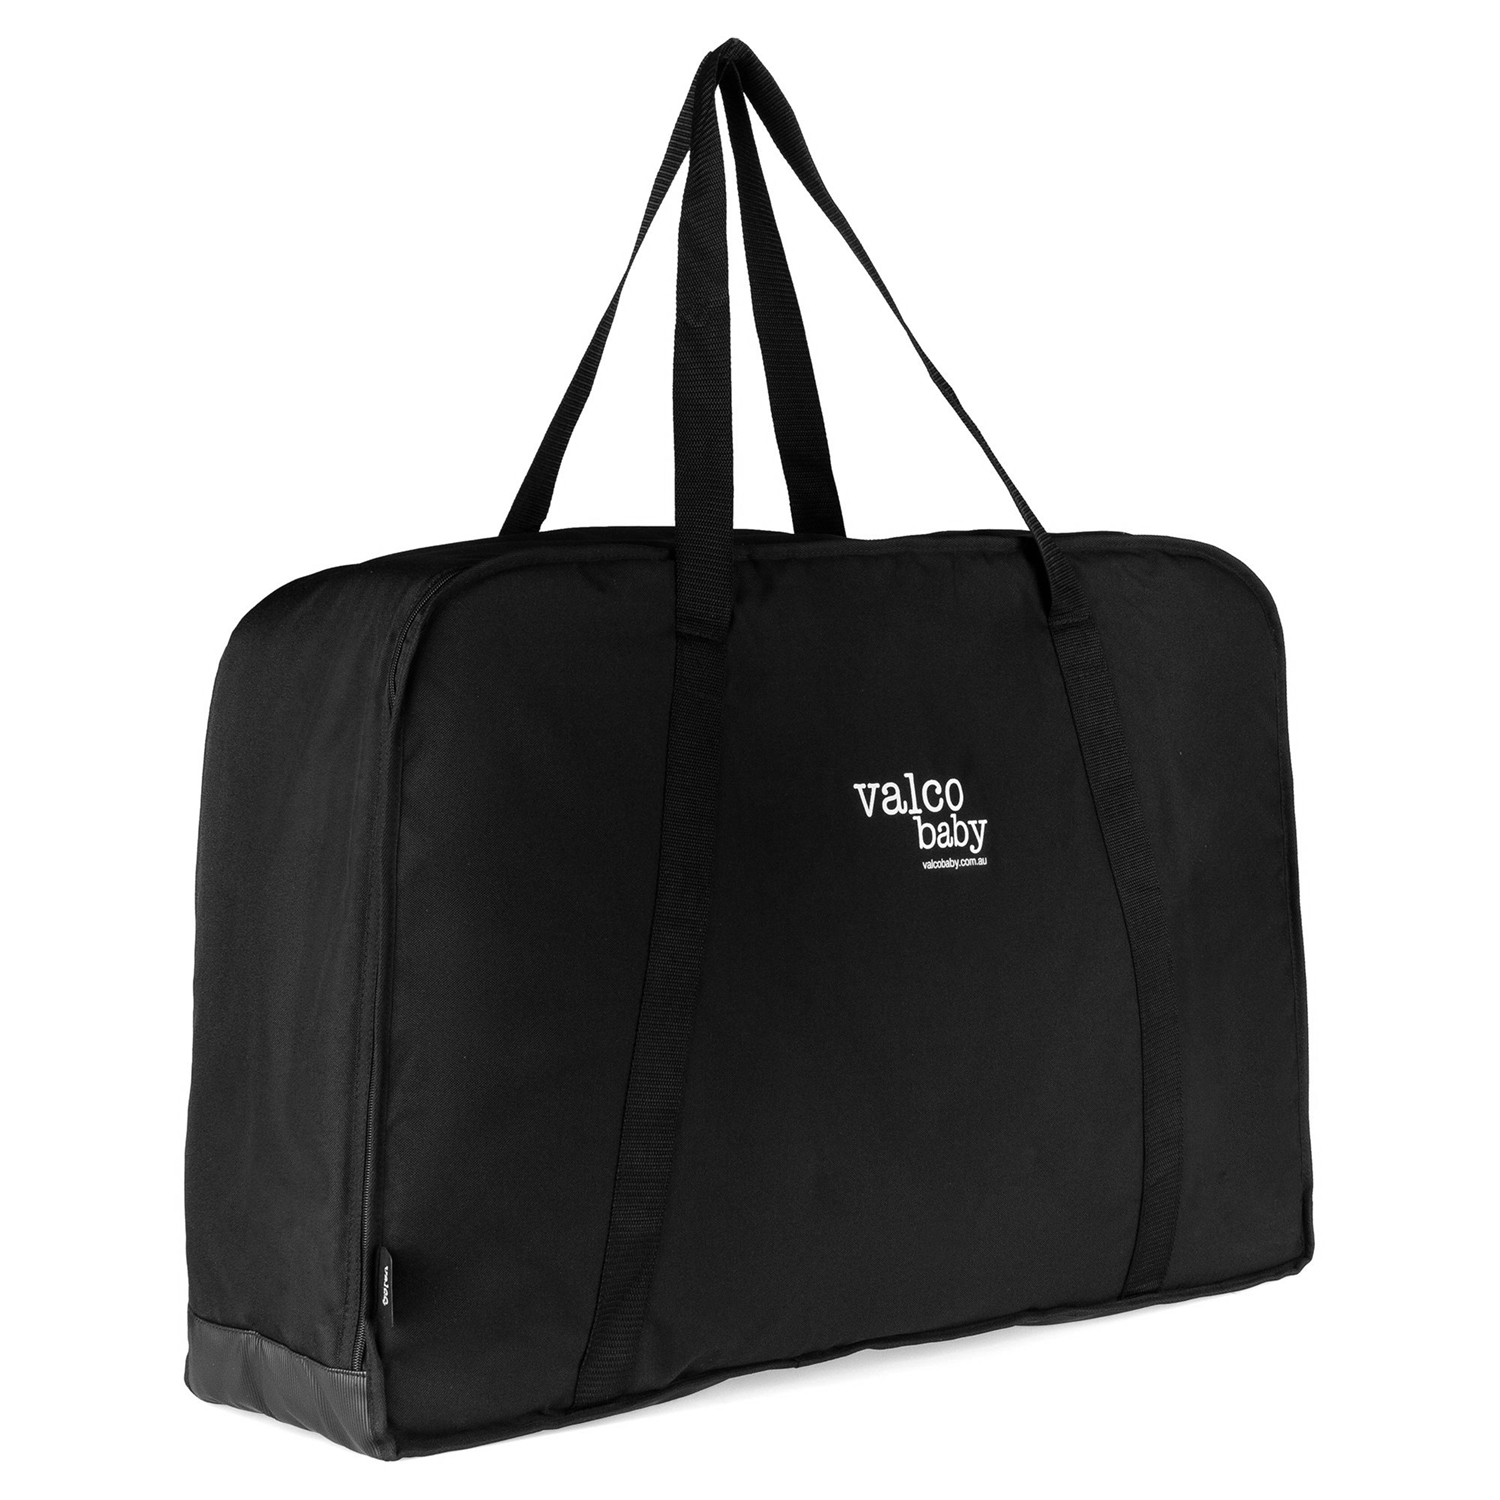 Сумка для перевозки коляски Storage Pram Bag Valco Baby сумка doona для путешествий для автокресла коляски